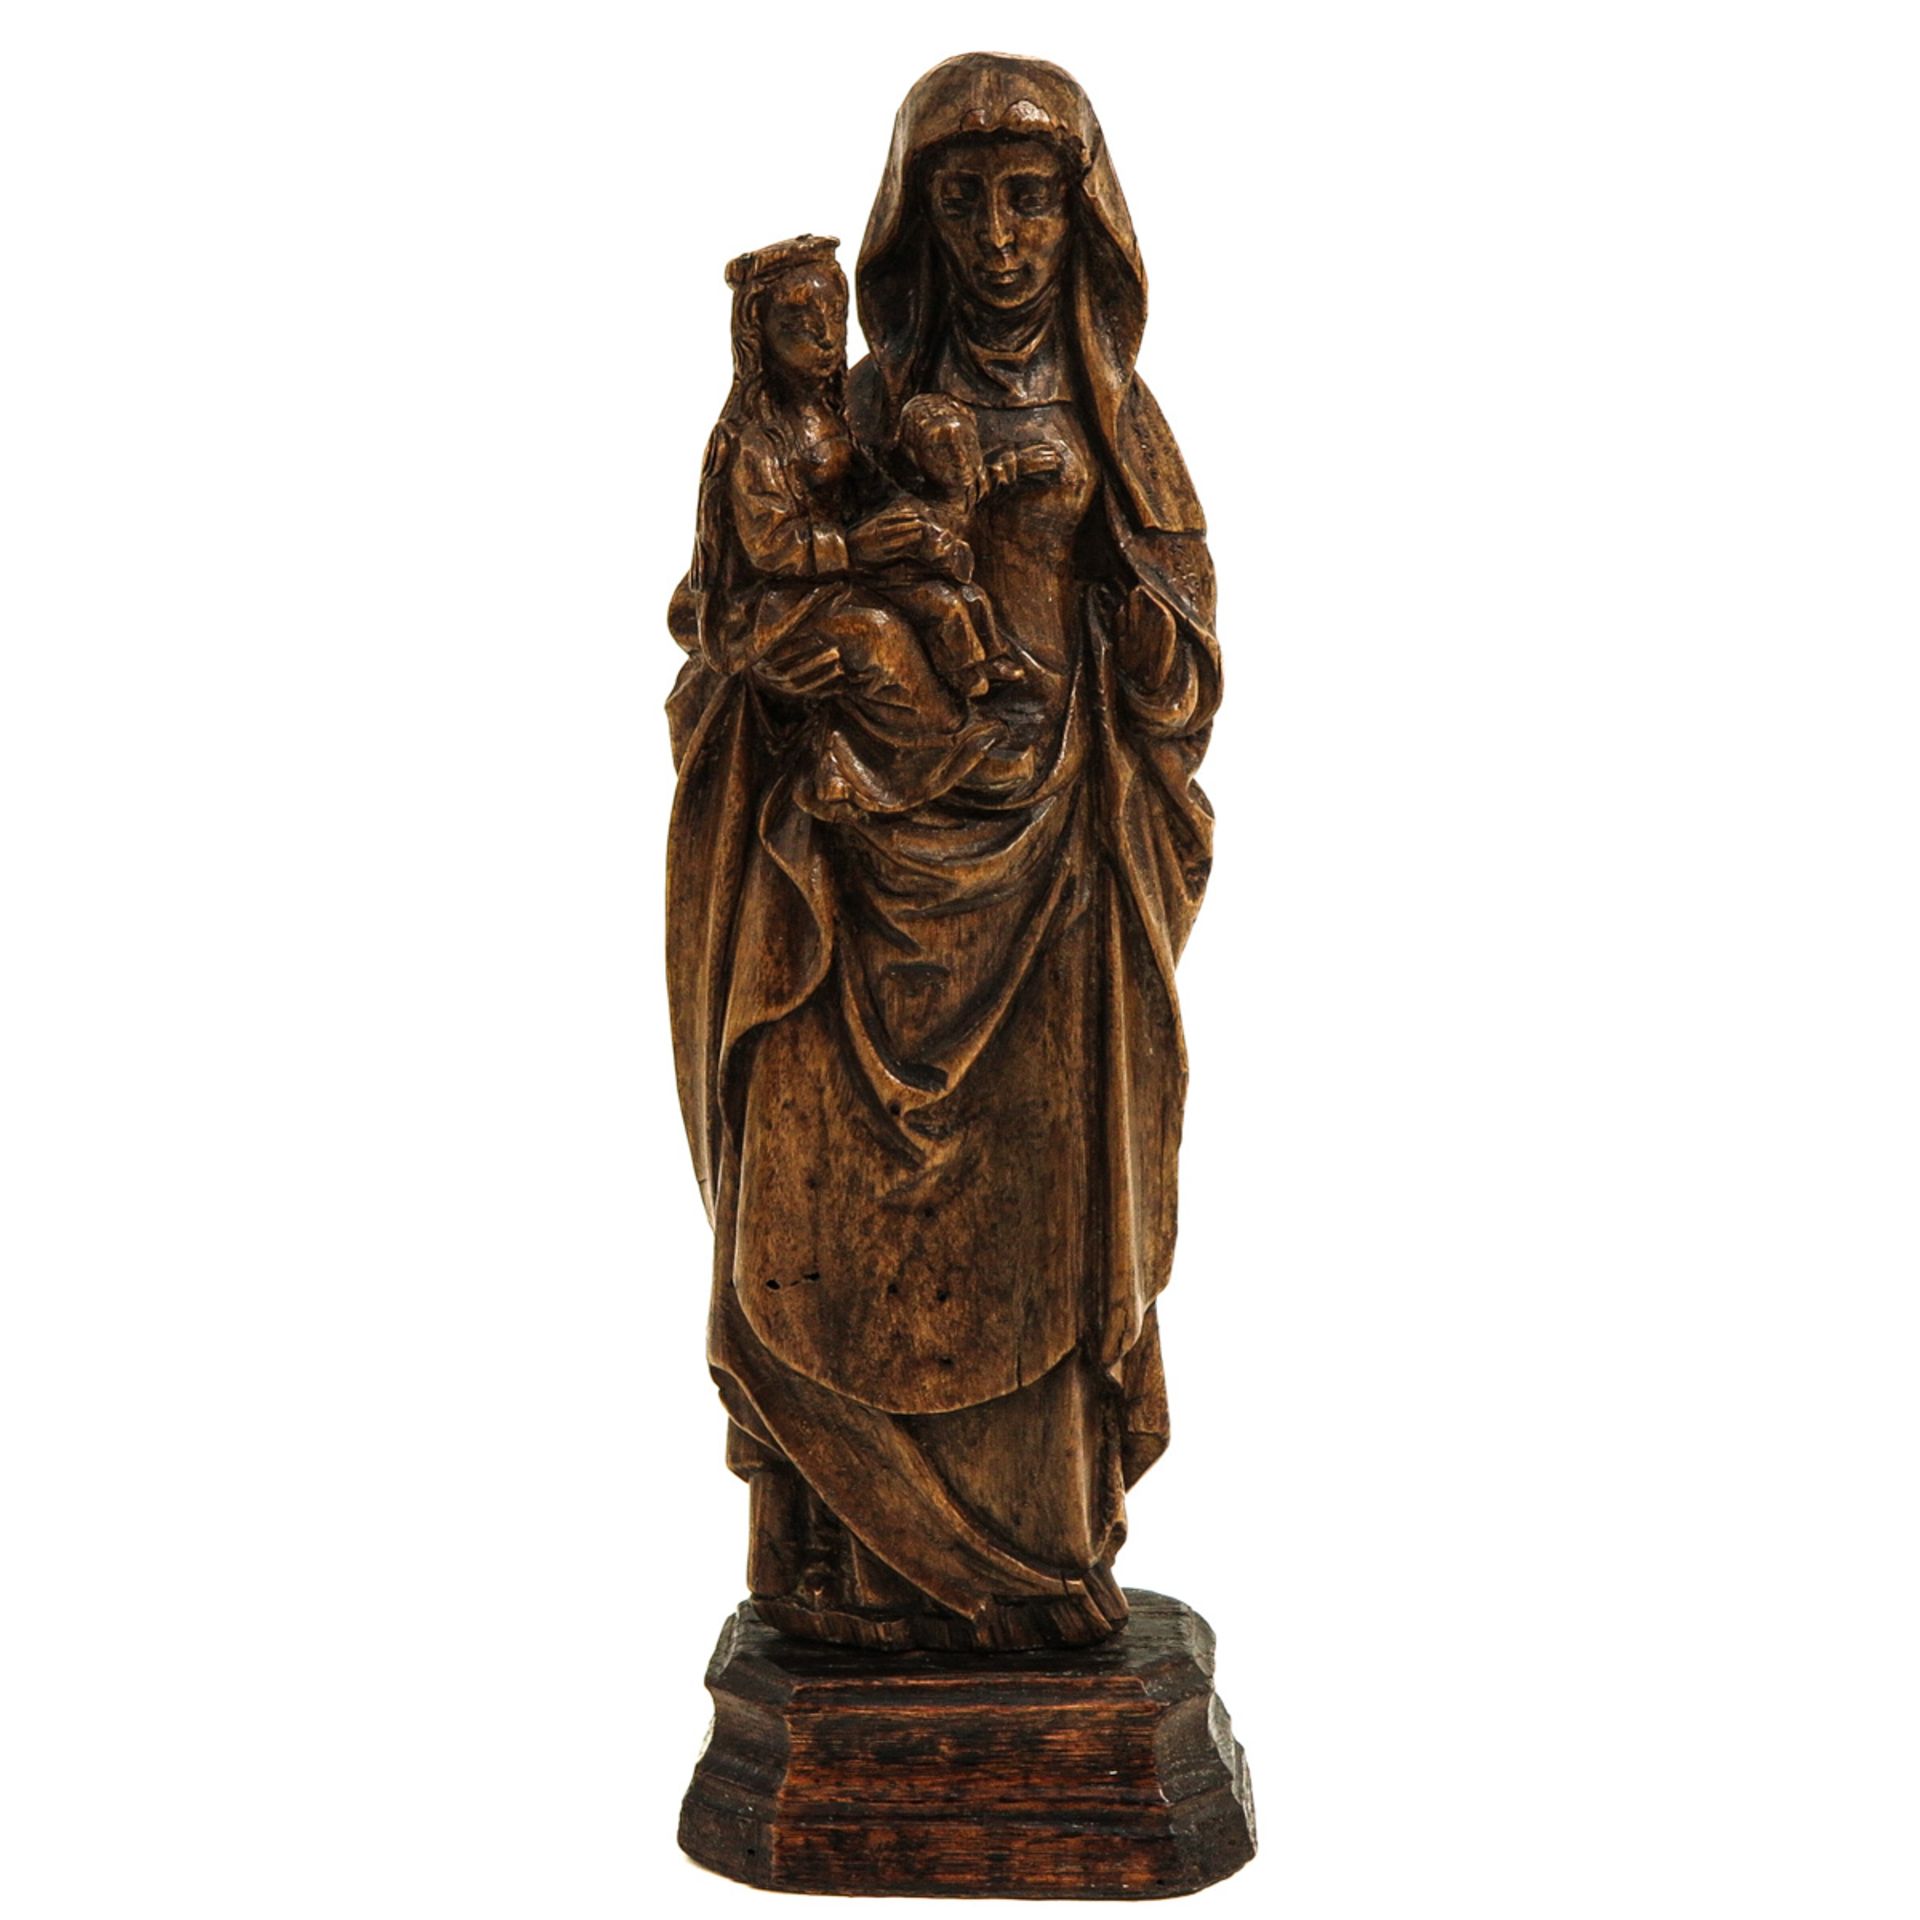 A 16th Century Sculpture of Saint Anna de Drieen